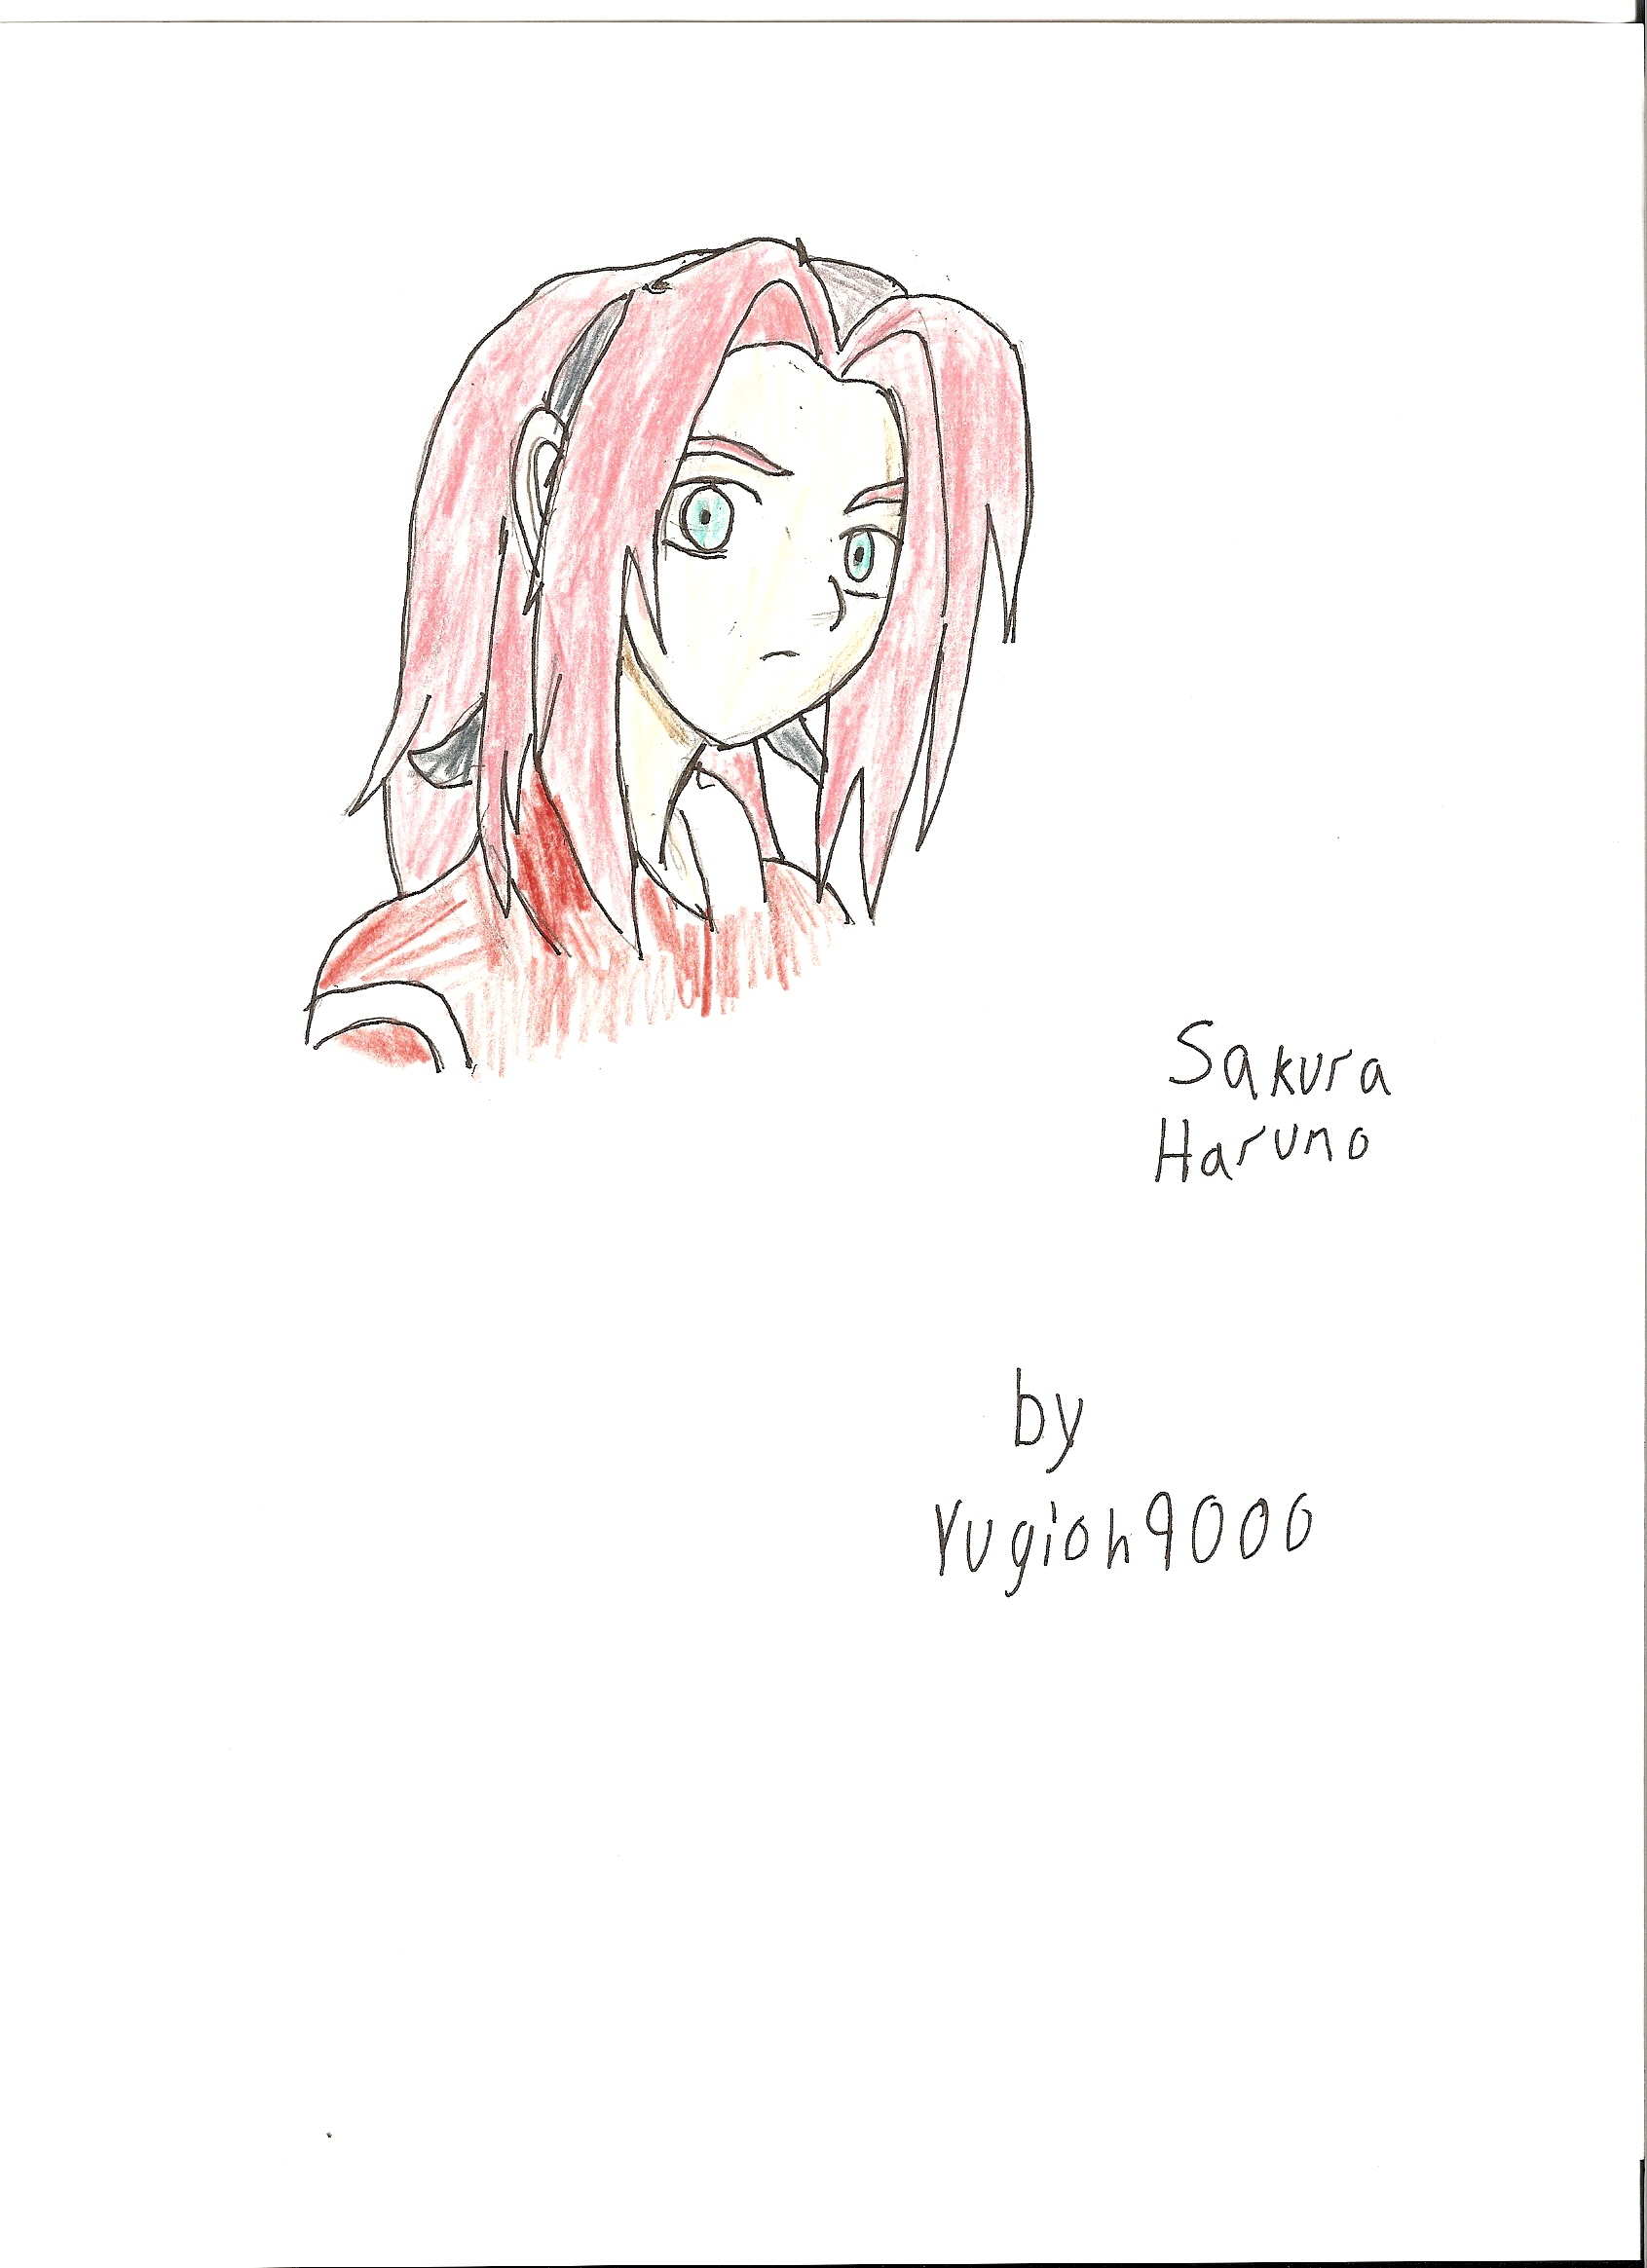 Sakura Haruno by Yugioh9000